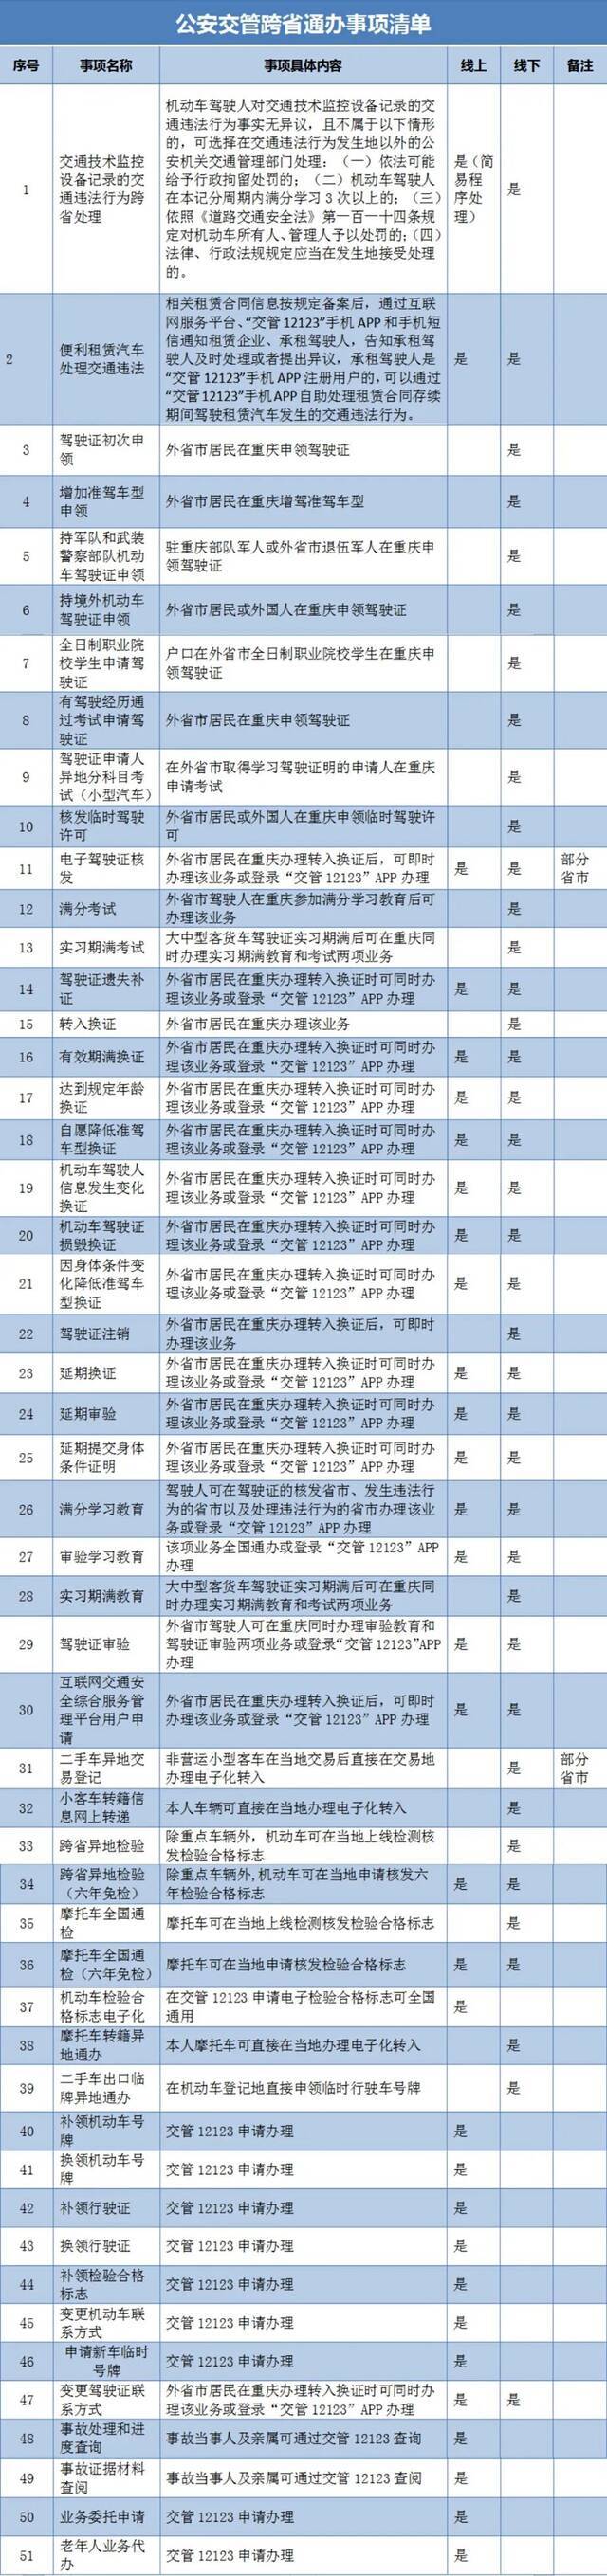 异地车检、考证……重庆50余项公安交管业务“跨省通办”